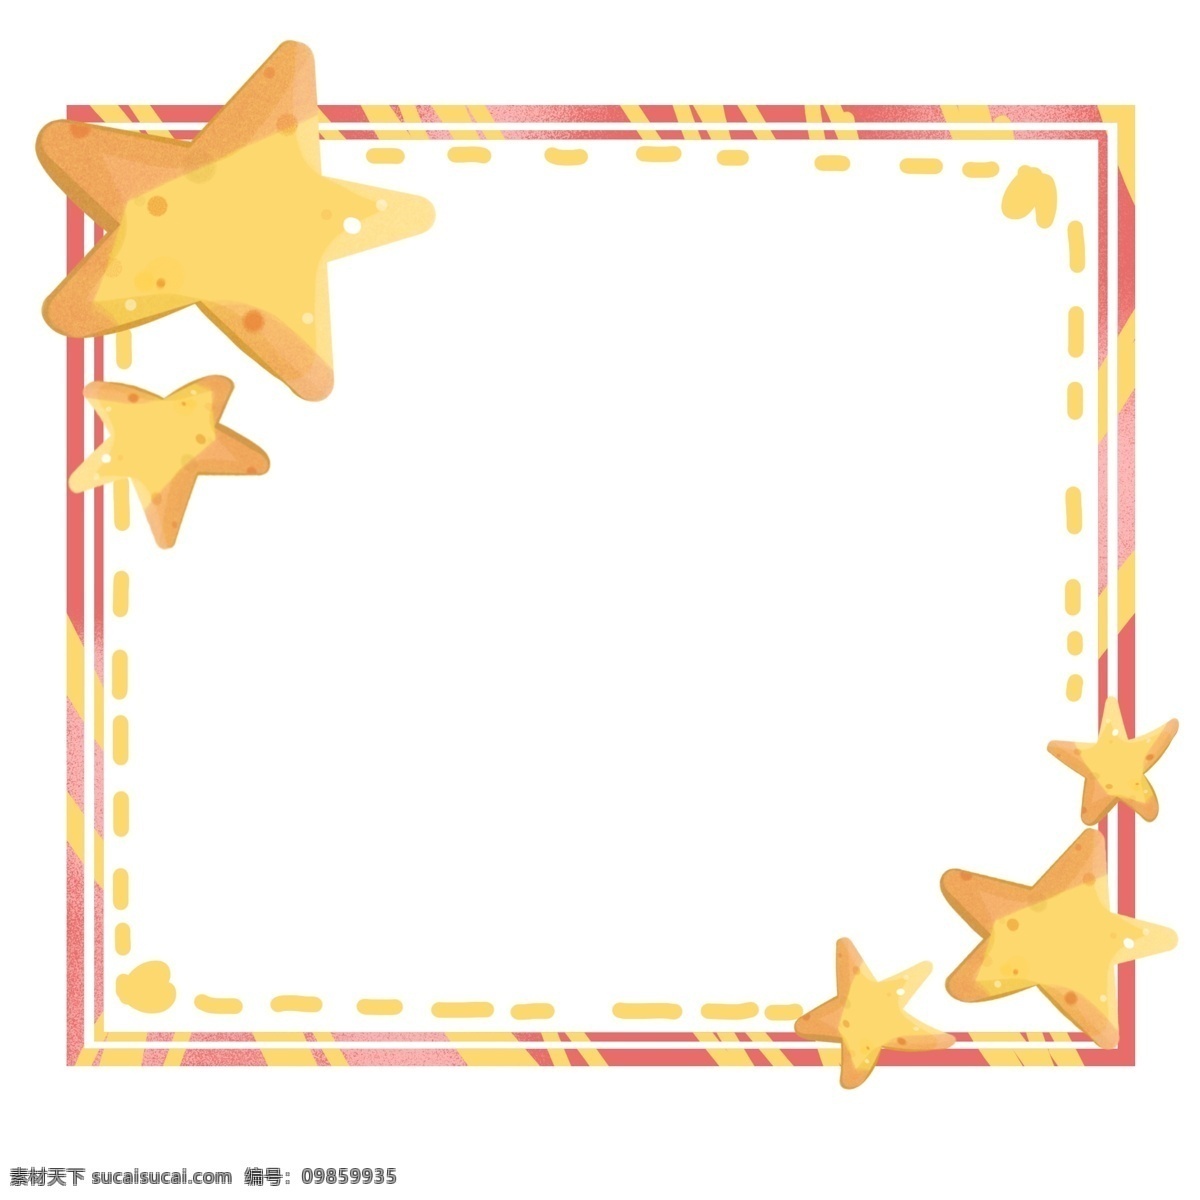 星星 闪亮 虚线 边框 黄色 虚线边框 插图 简约 黄色的 扁平化 金色的星星 矢量图 可爱的手绘的 手绘星星